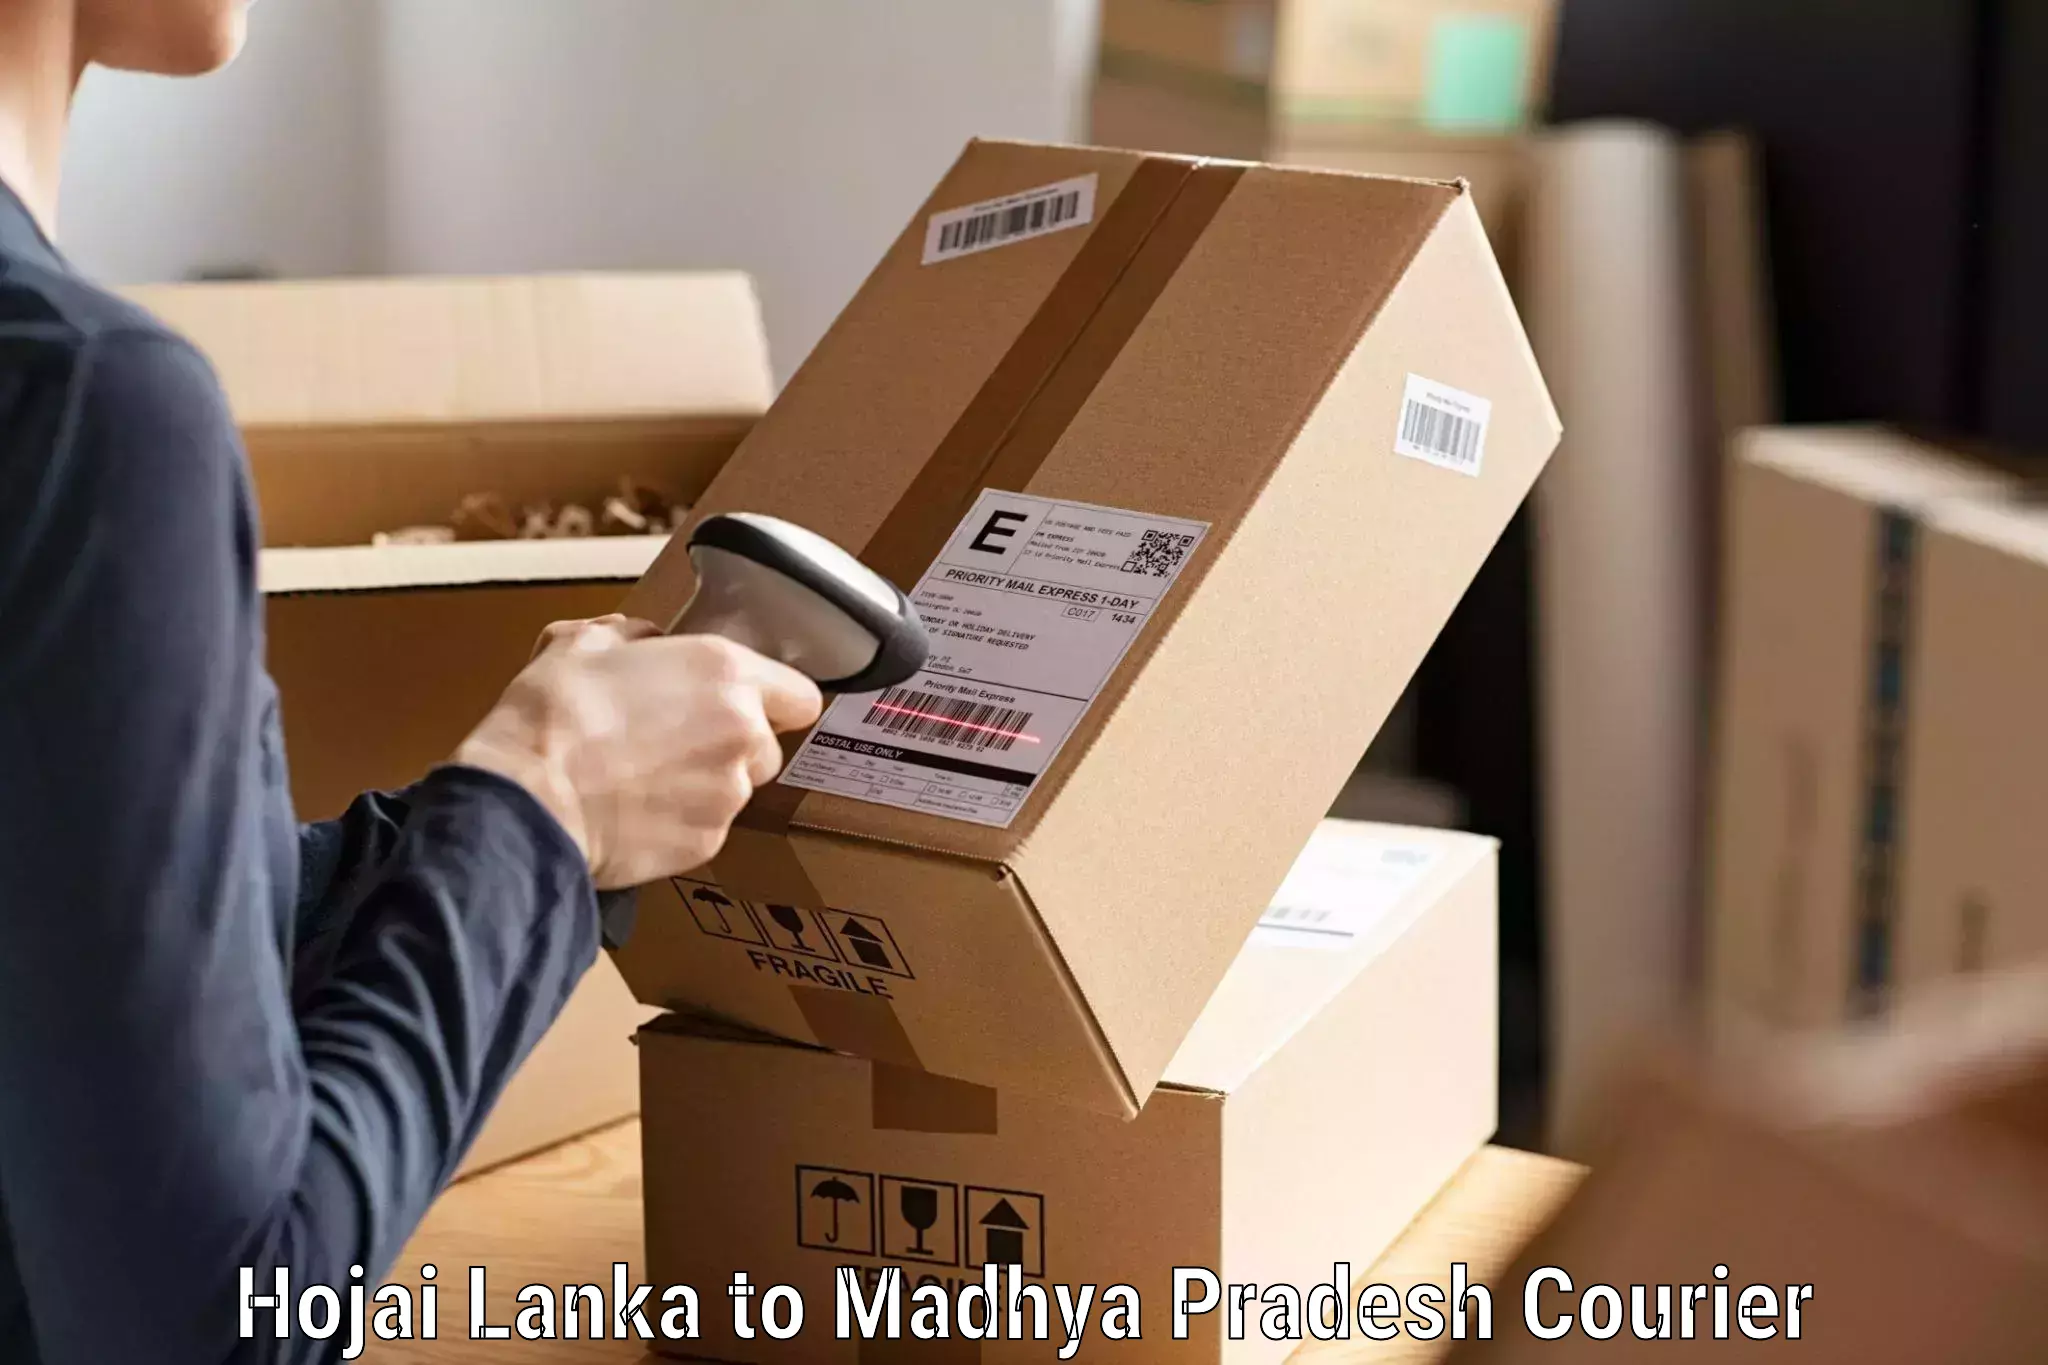 Regular parcel service Hojai Lanka to Mandla